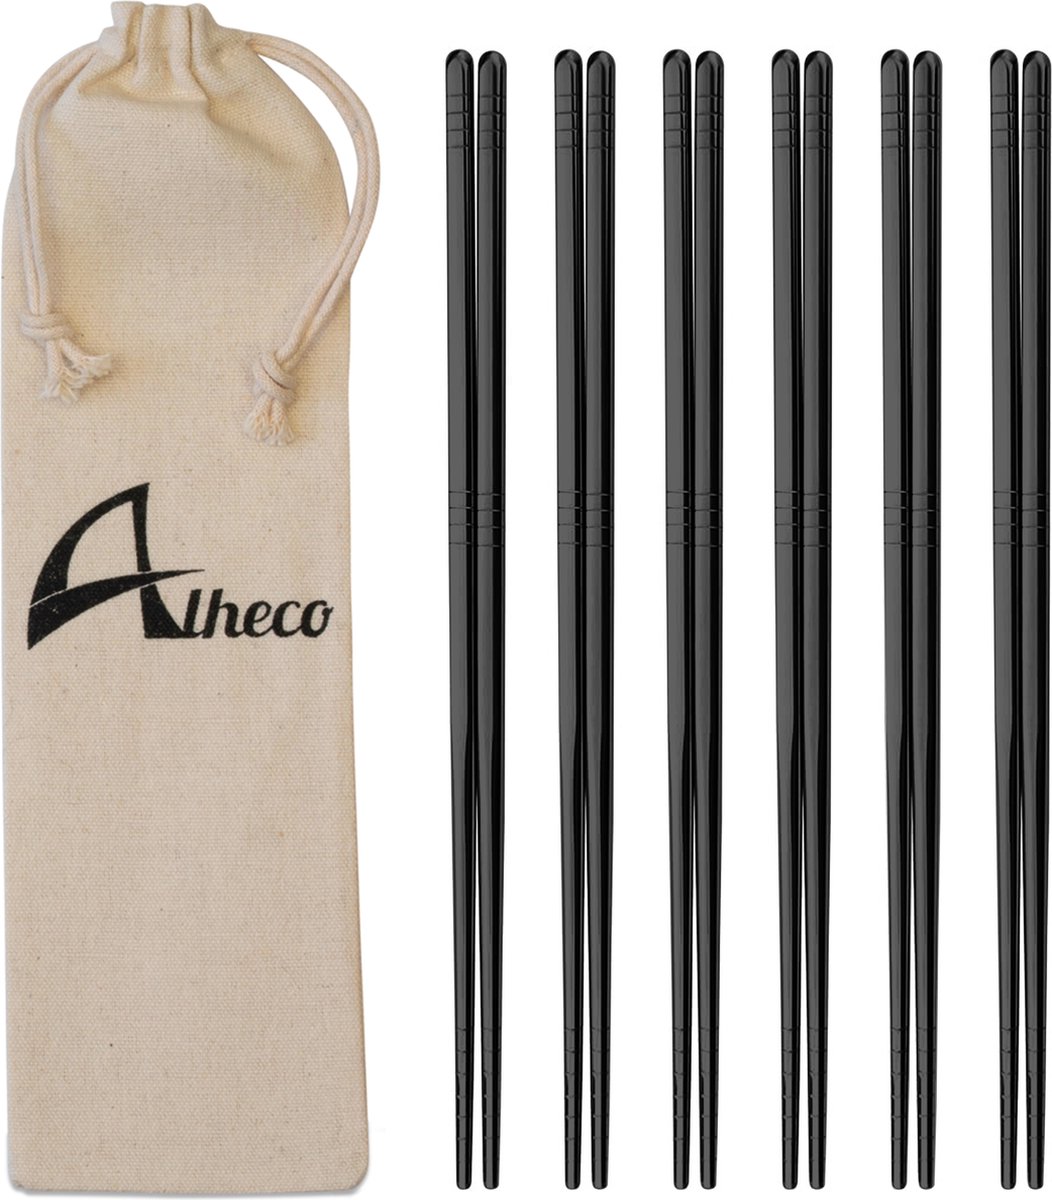 Alheco 6 paar Koreaanse chopsticks - Eetstokjes - Metaal / RVS - Zwart